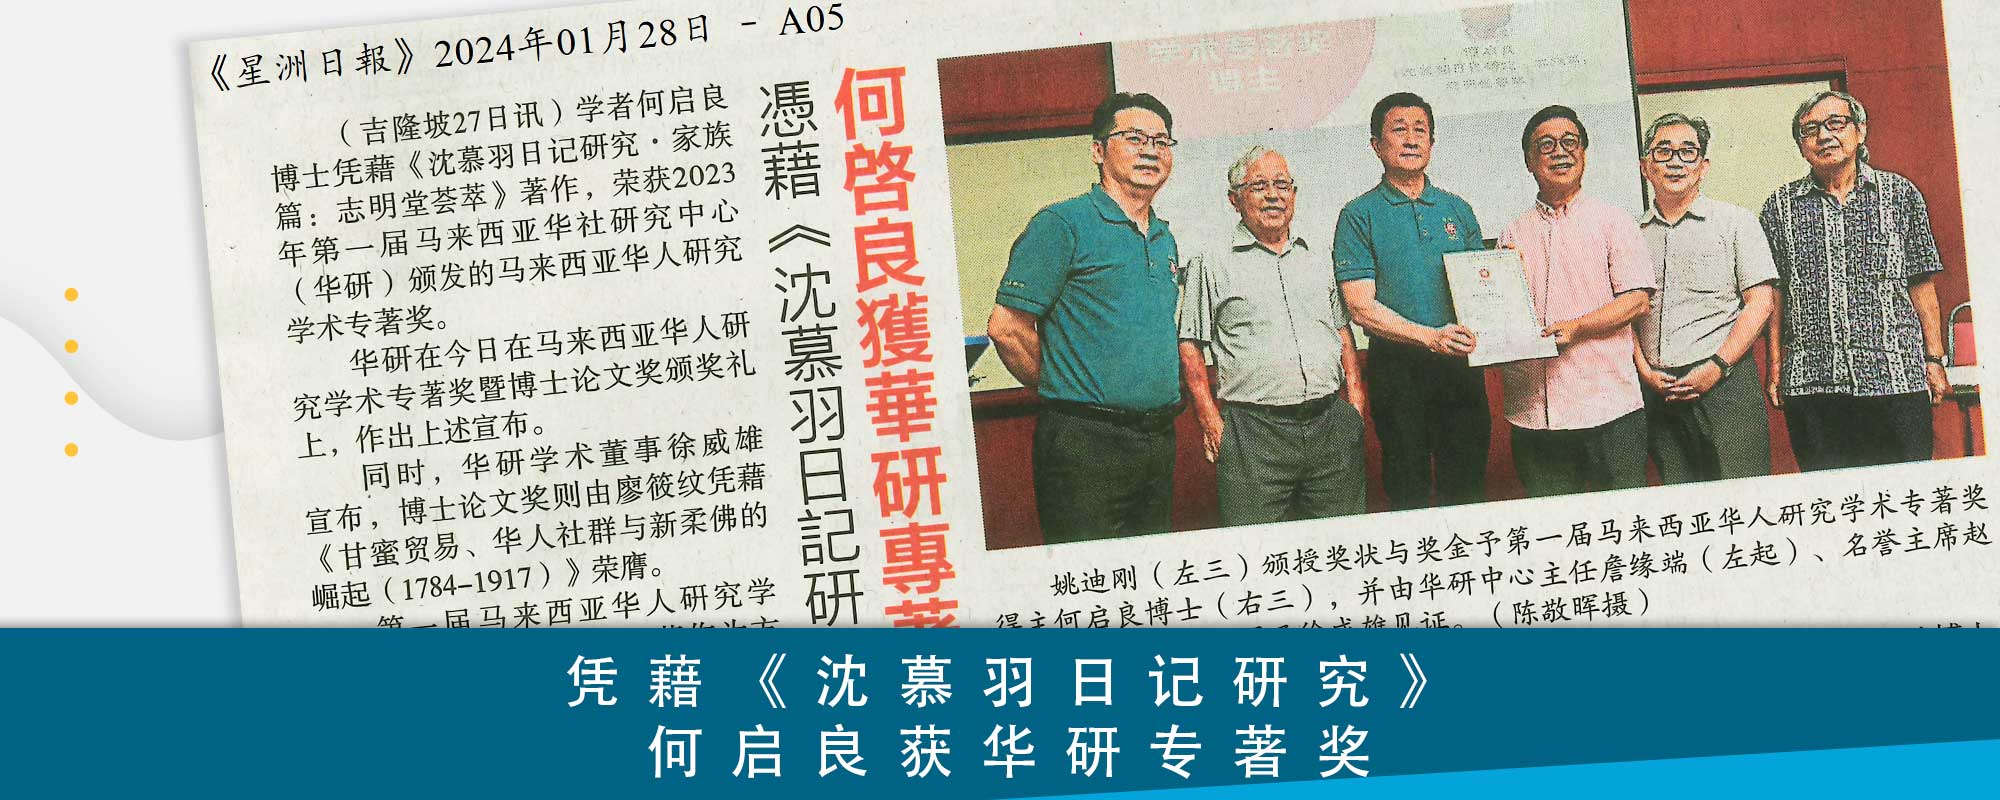 第六届马来西亚华人研究国际双年会新闻发布会